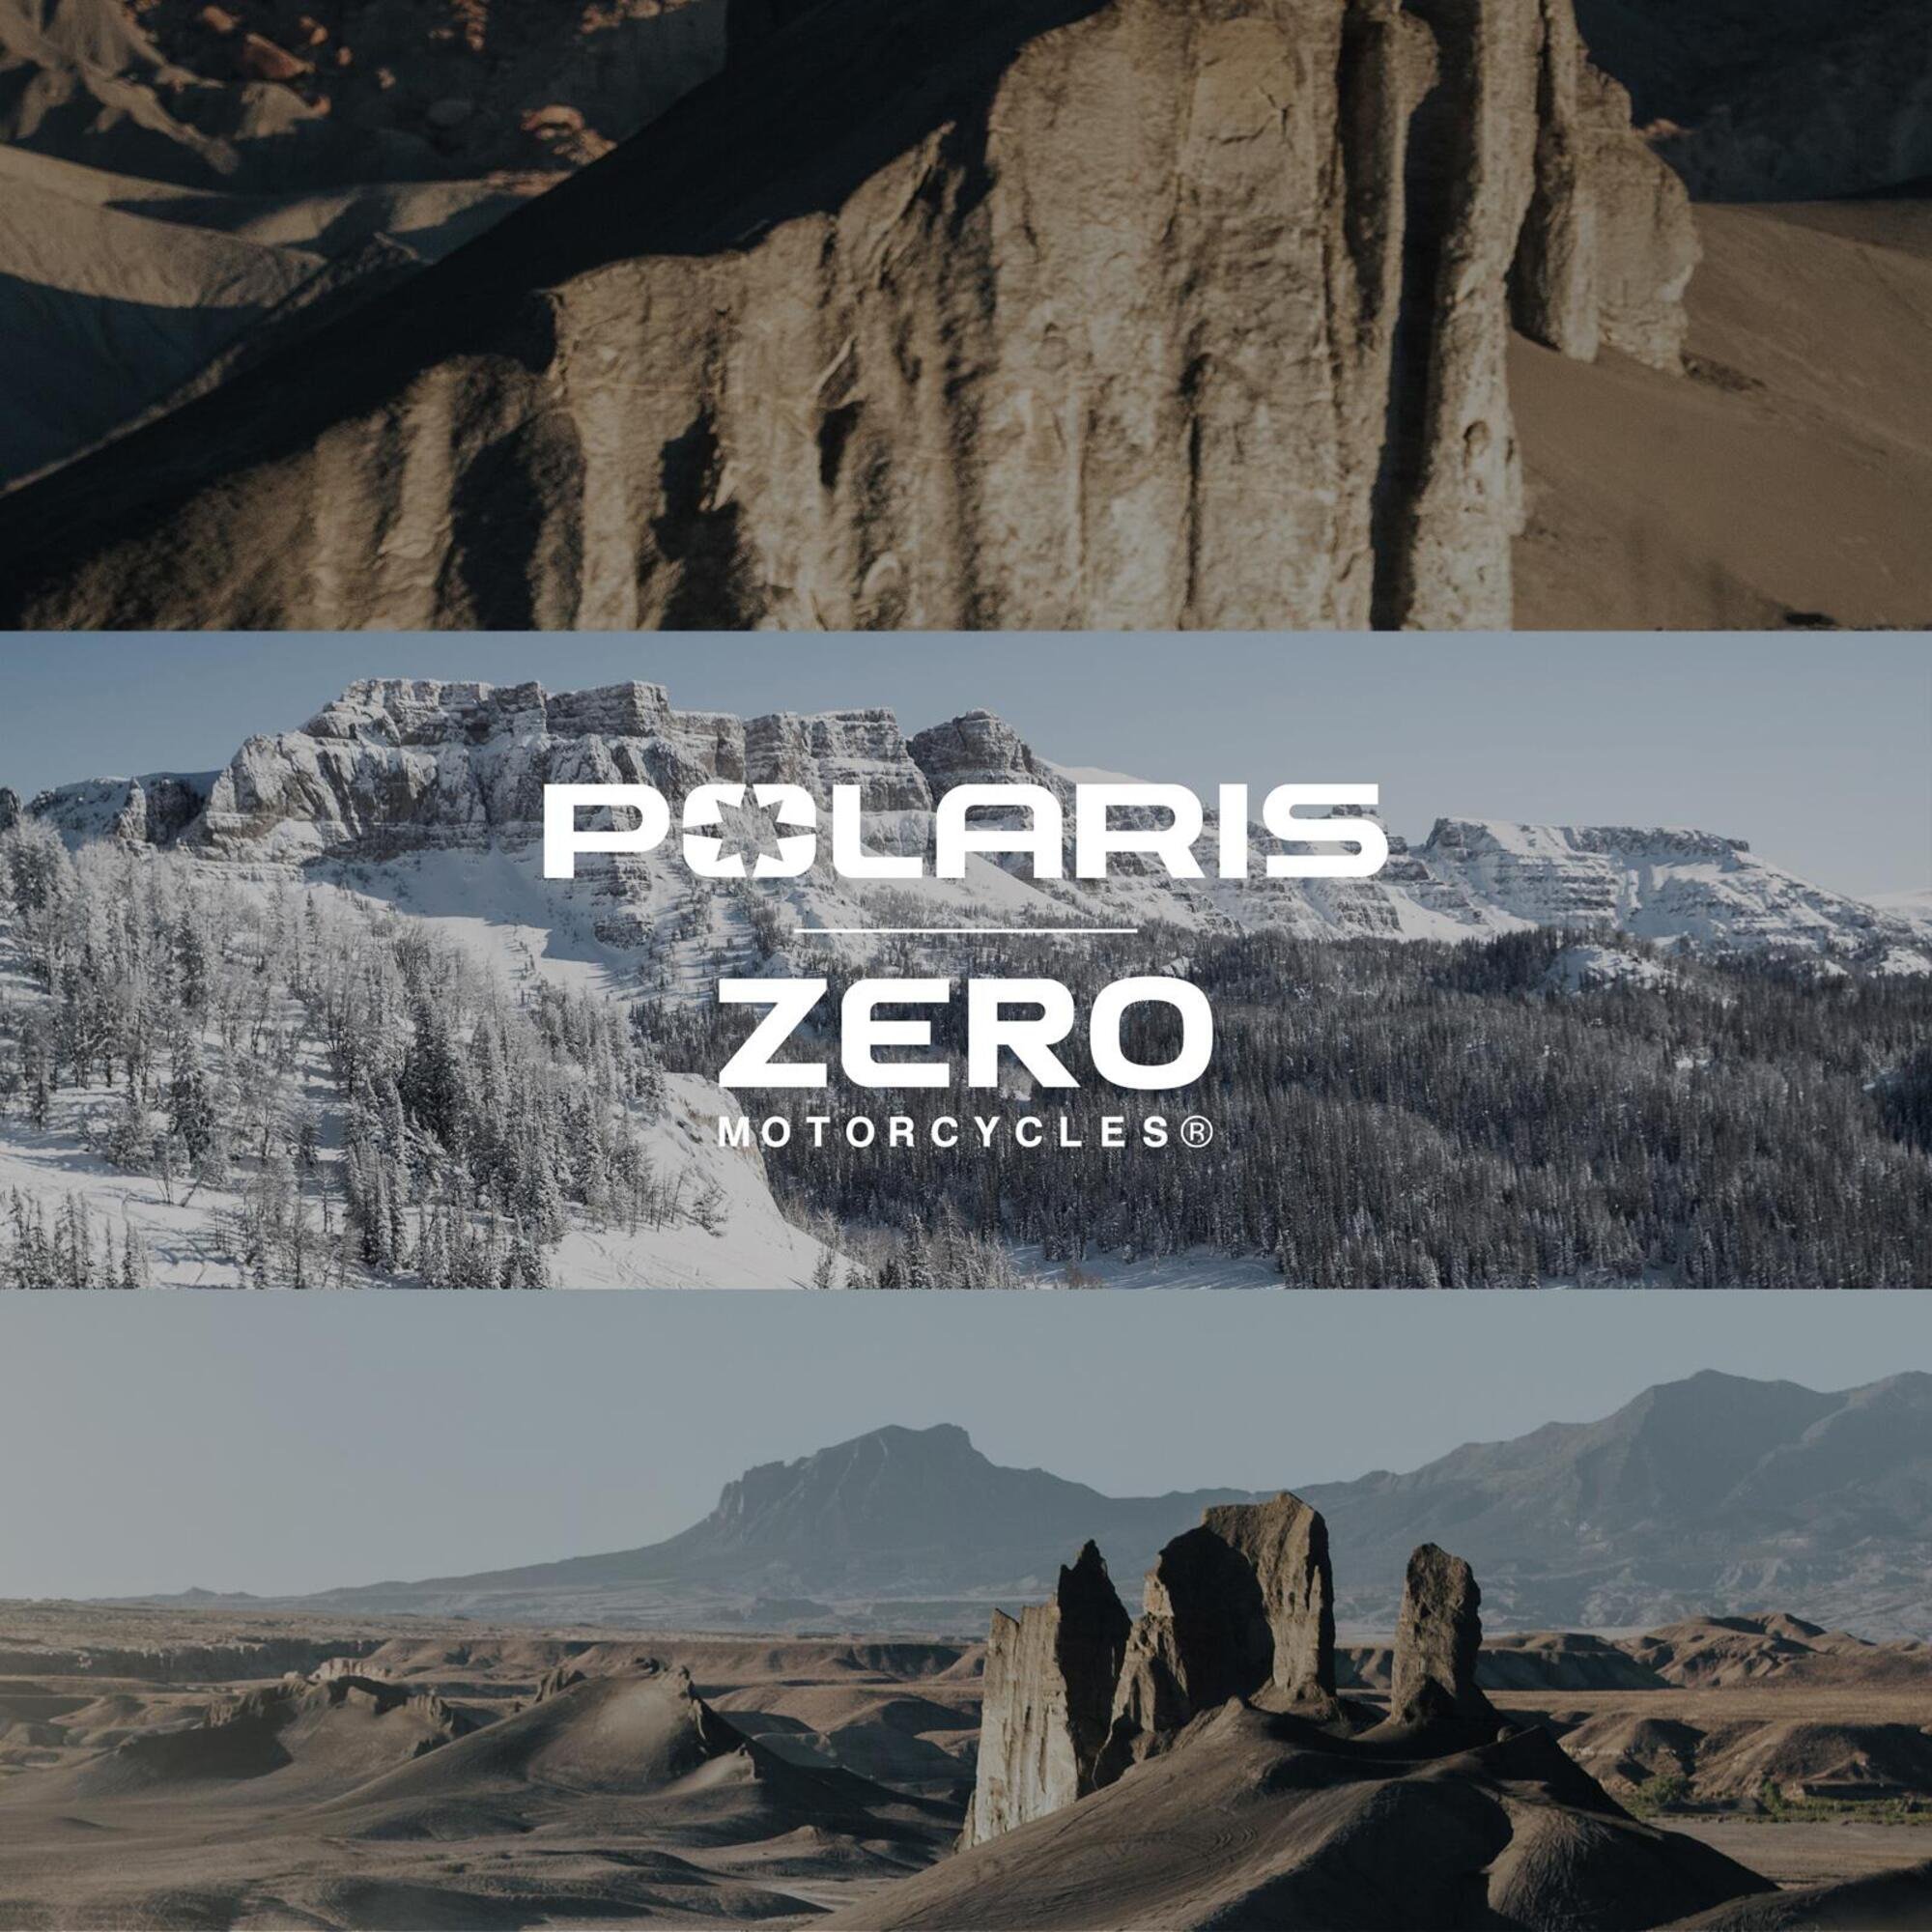 Partnership tra Polaris e Zero Motorcycles per lo sviluppo di veicoli elettrici